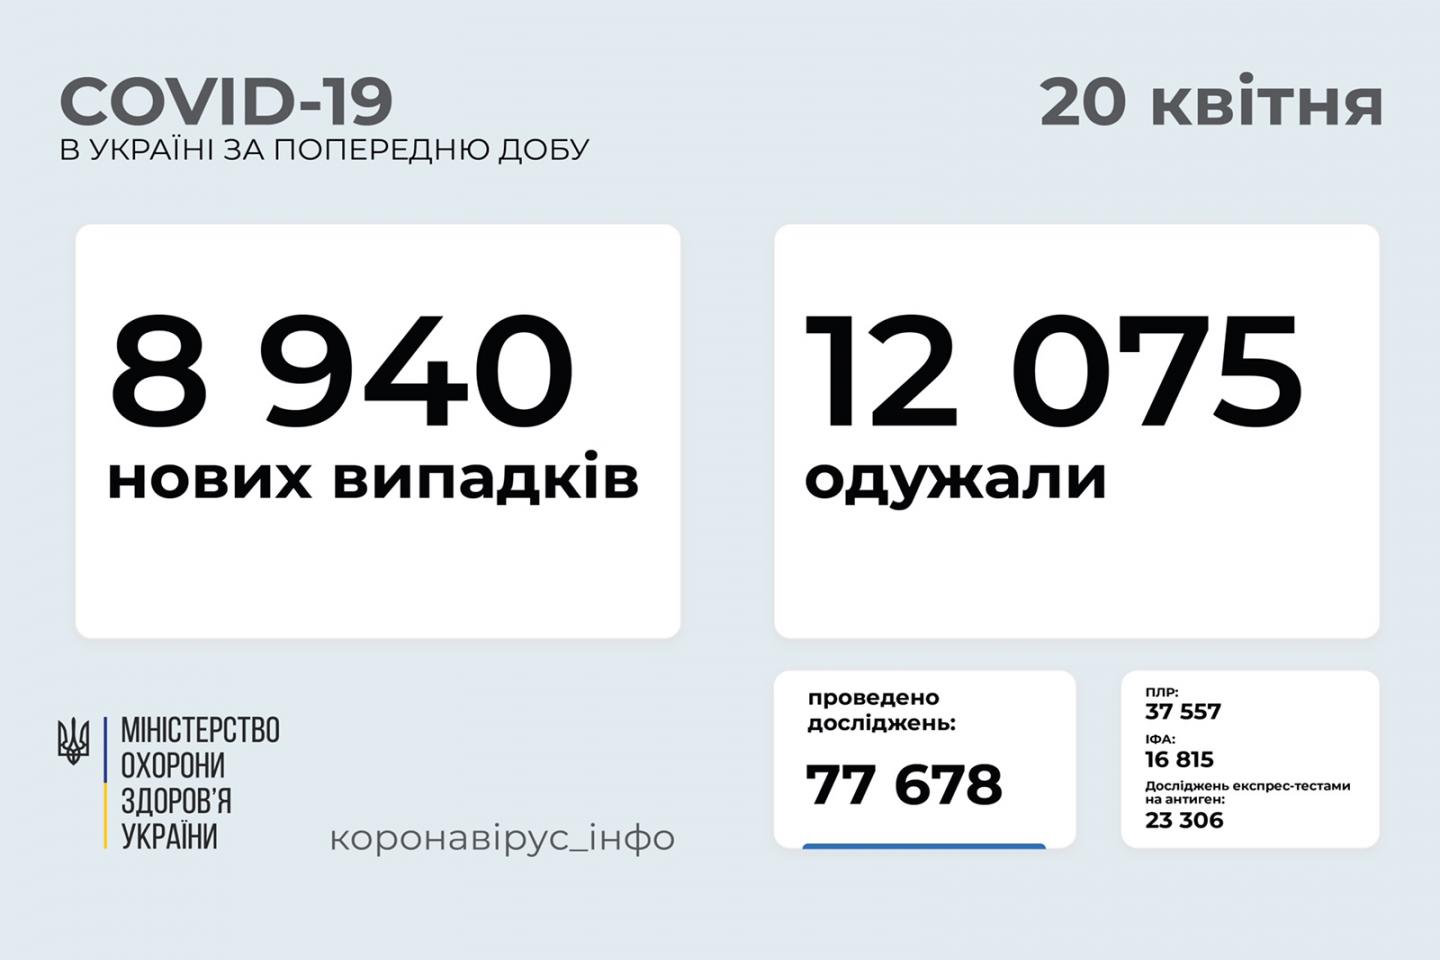 http://dunrada.gov.ua/uploadfile/archive_news/2021/04/20/2021-04-20_7289/images/images-33480.jpg